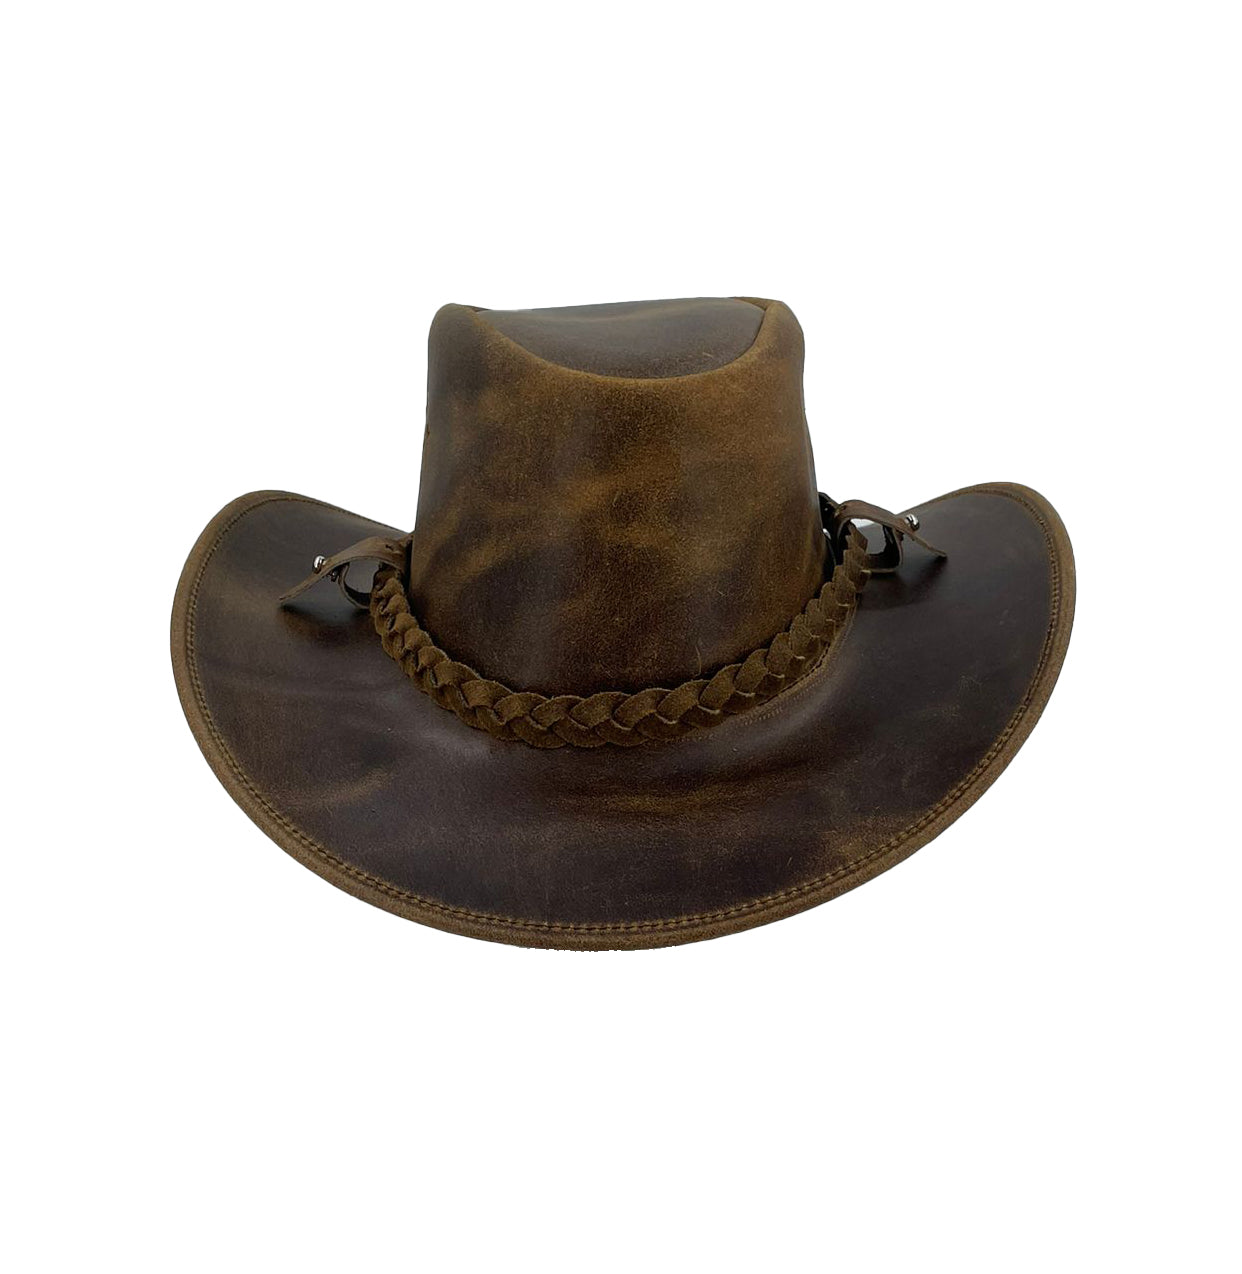 Winston- Robuster Outbacker Echtleder Hut in drei Farben mit einem 3 Strang geflochtenem Hutband